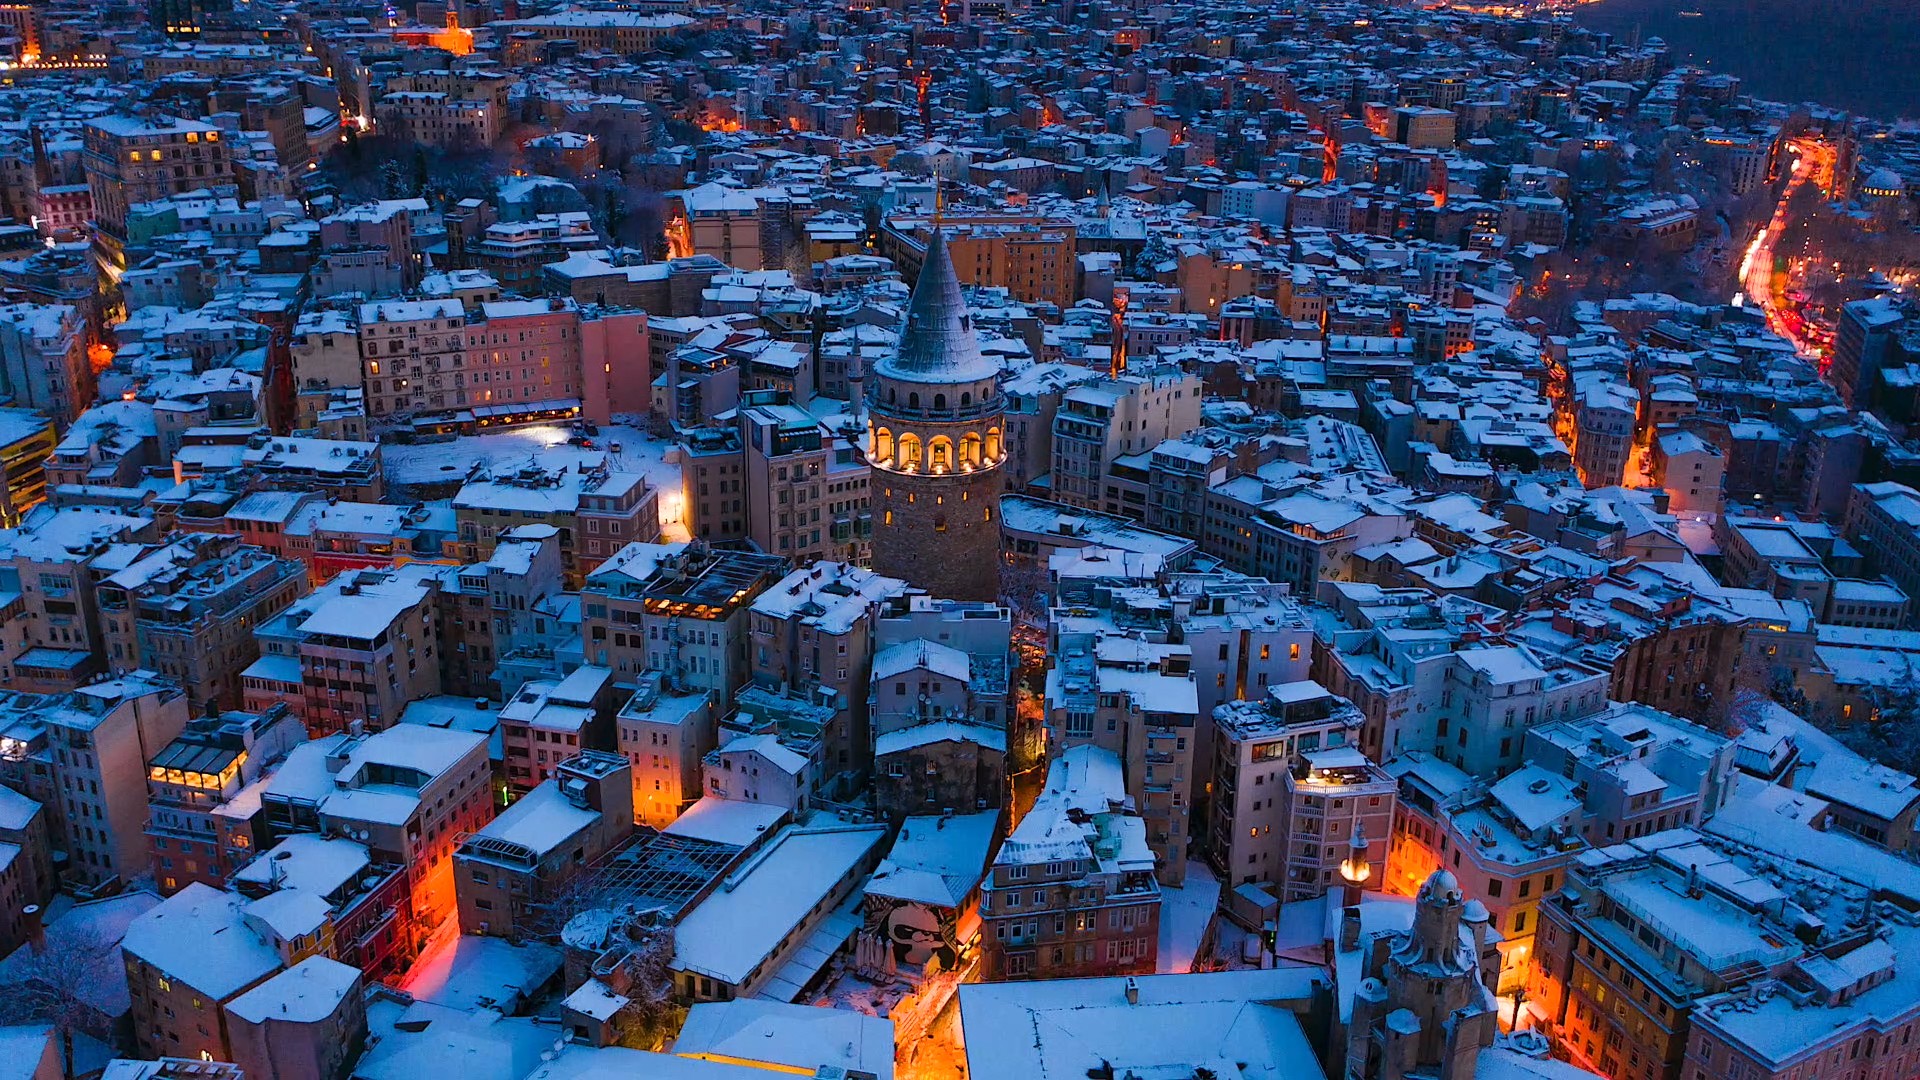 İstanbul’u etkisini altına alan yoğun kar yağışı ve fırtına, eşsiz görüntülerin oluşmasına neden oldu.